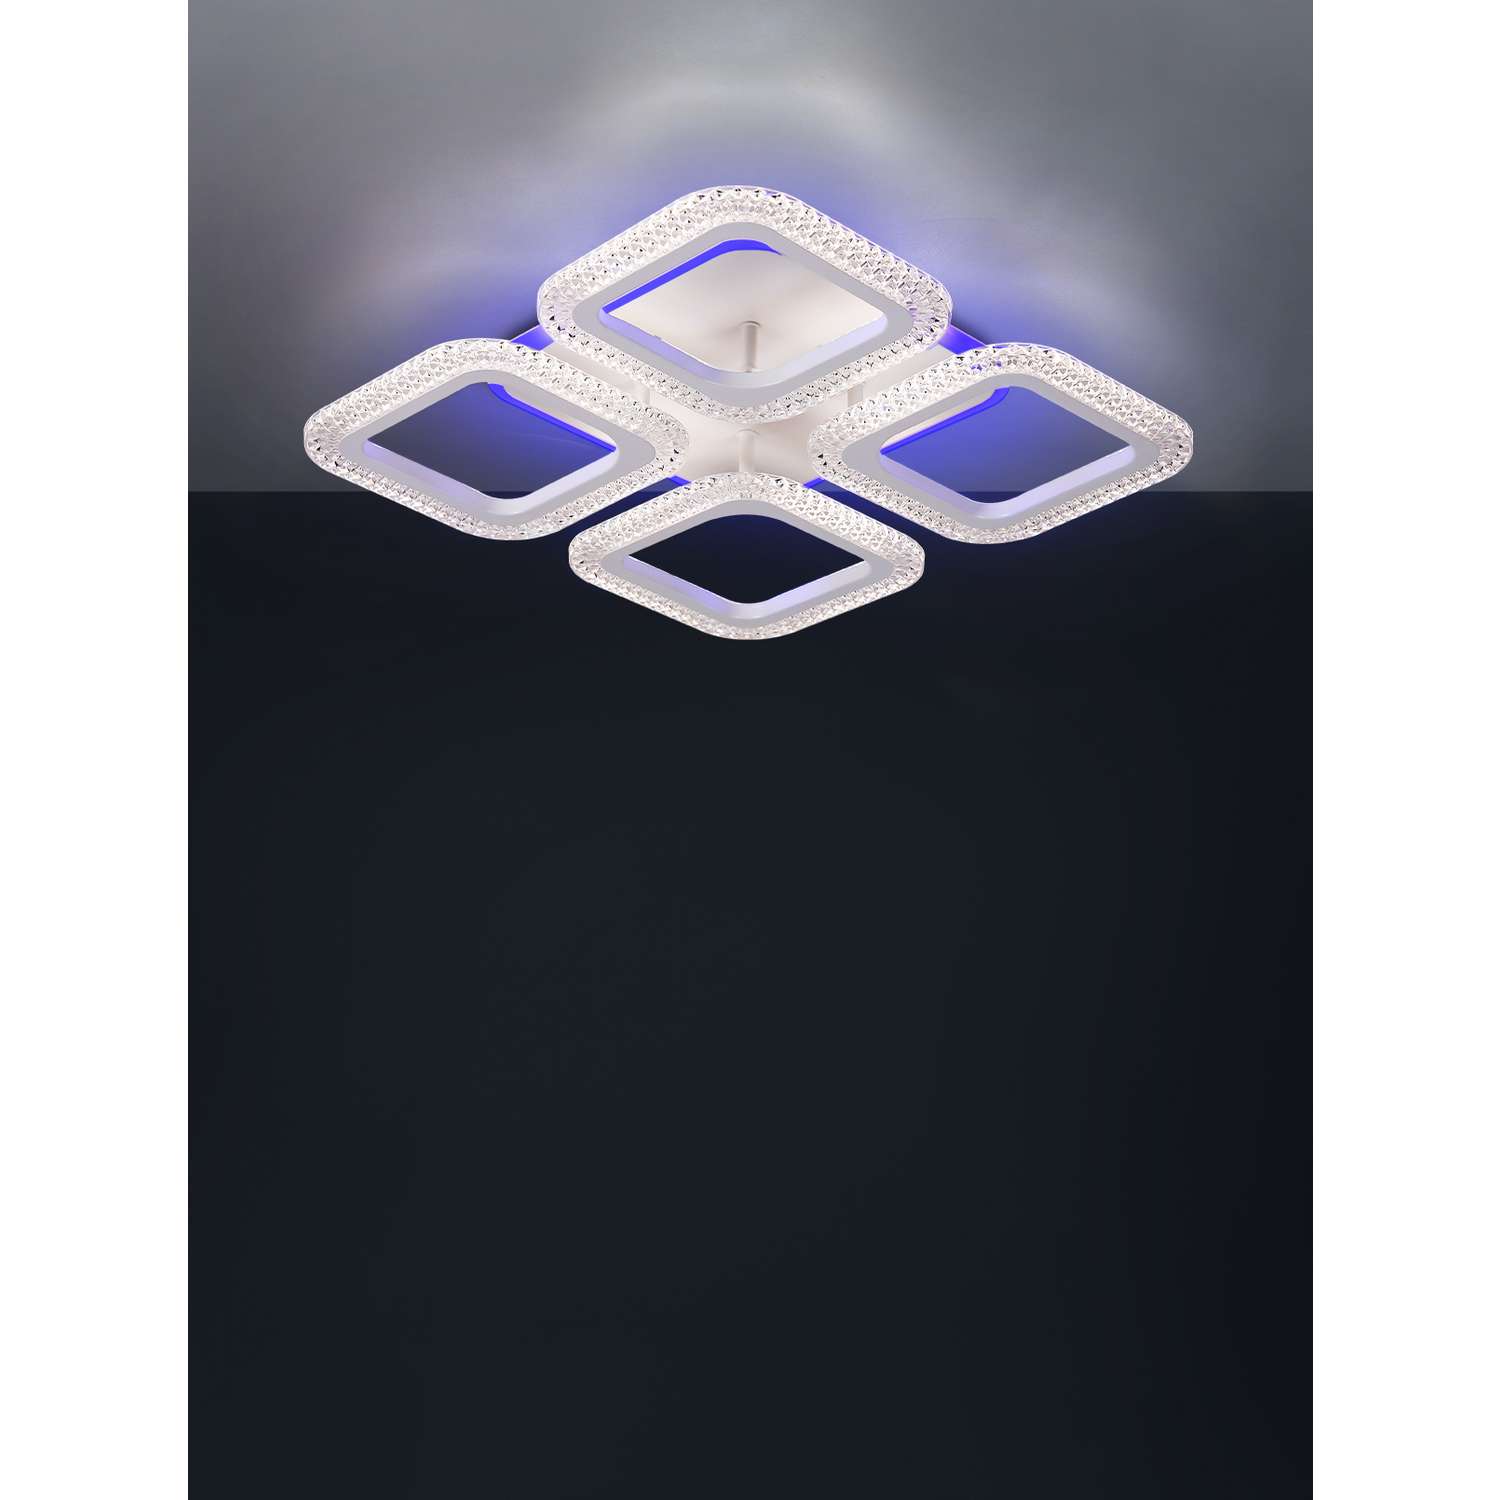 Светильник потолочный Wedo Light светодиодный с RGB-подсветкой - фото 9